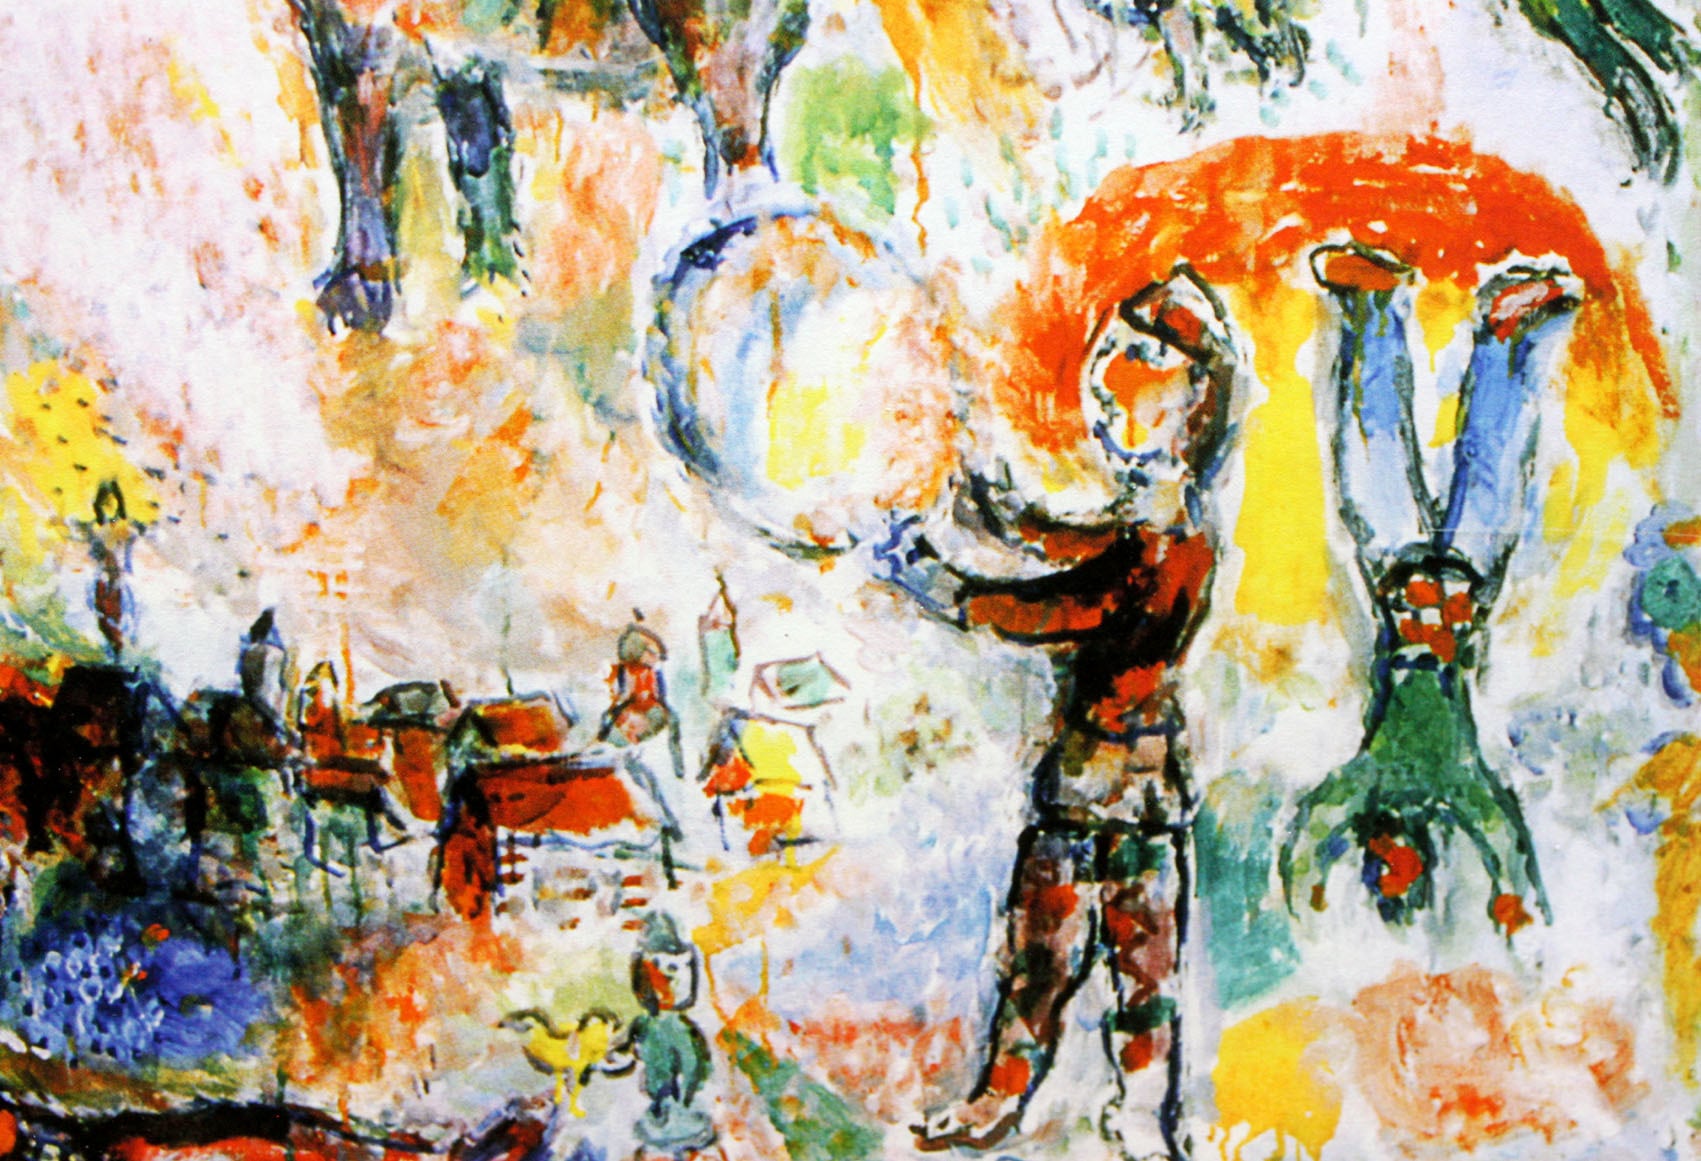 マルク・シャガール絵画「サーカス・グランド」作品証明書・展示用フック・限定375部エディション付複製画ジークレ